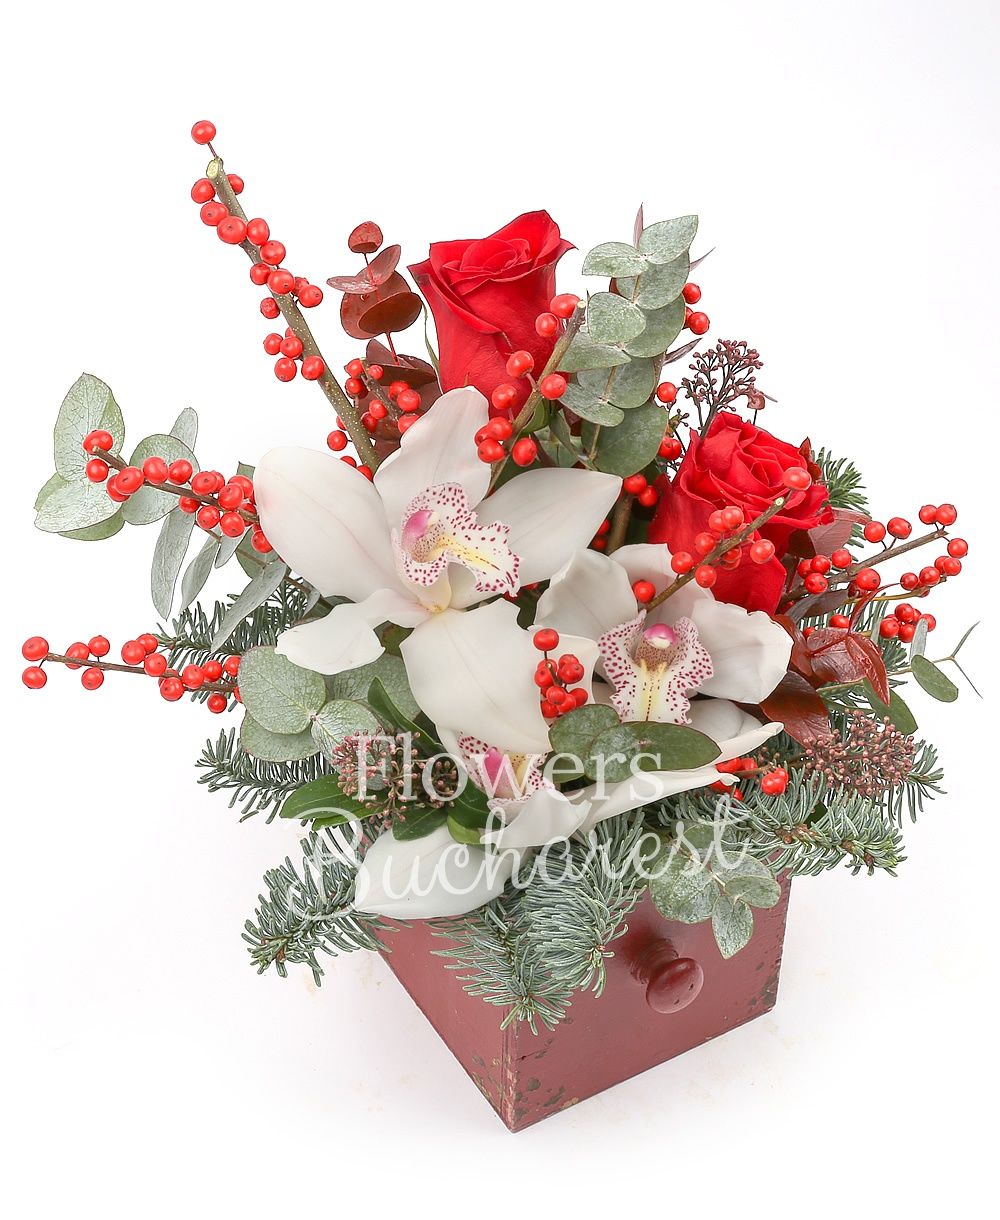 3 red roses, 1 white cymbidium, ilex, greenery